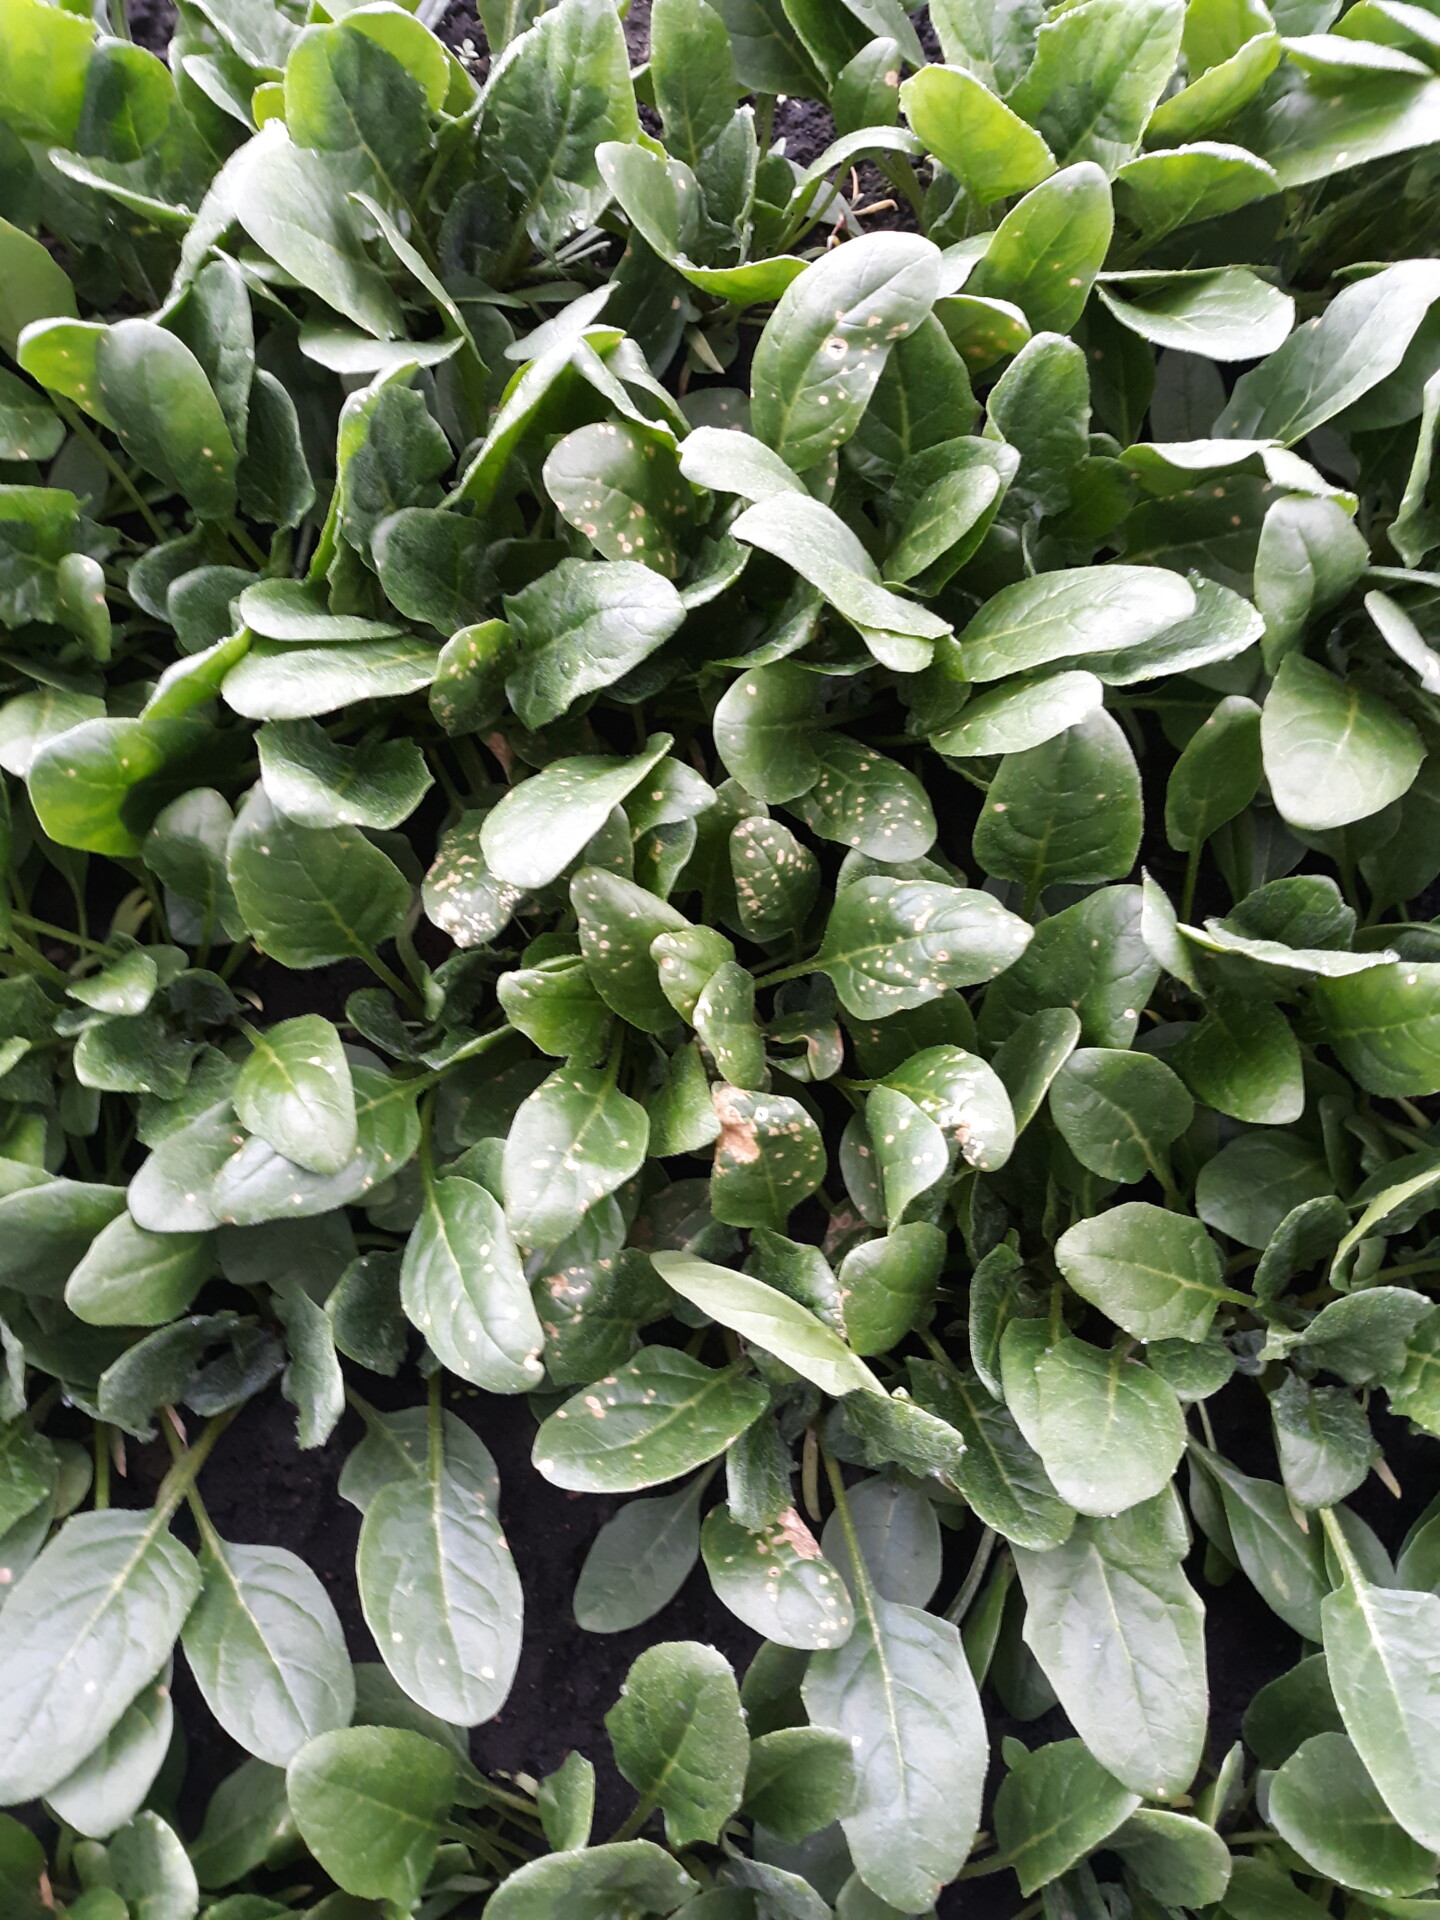 Cladosporium leaf spot of spinach.